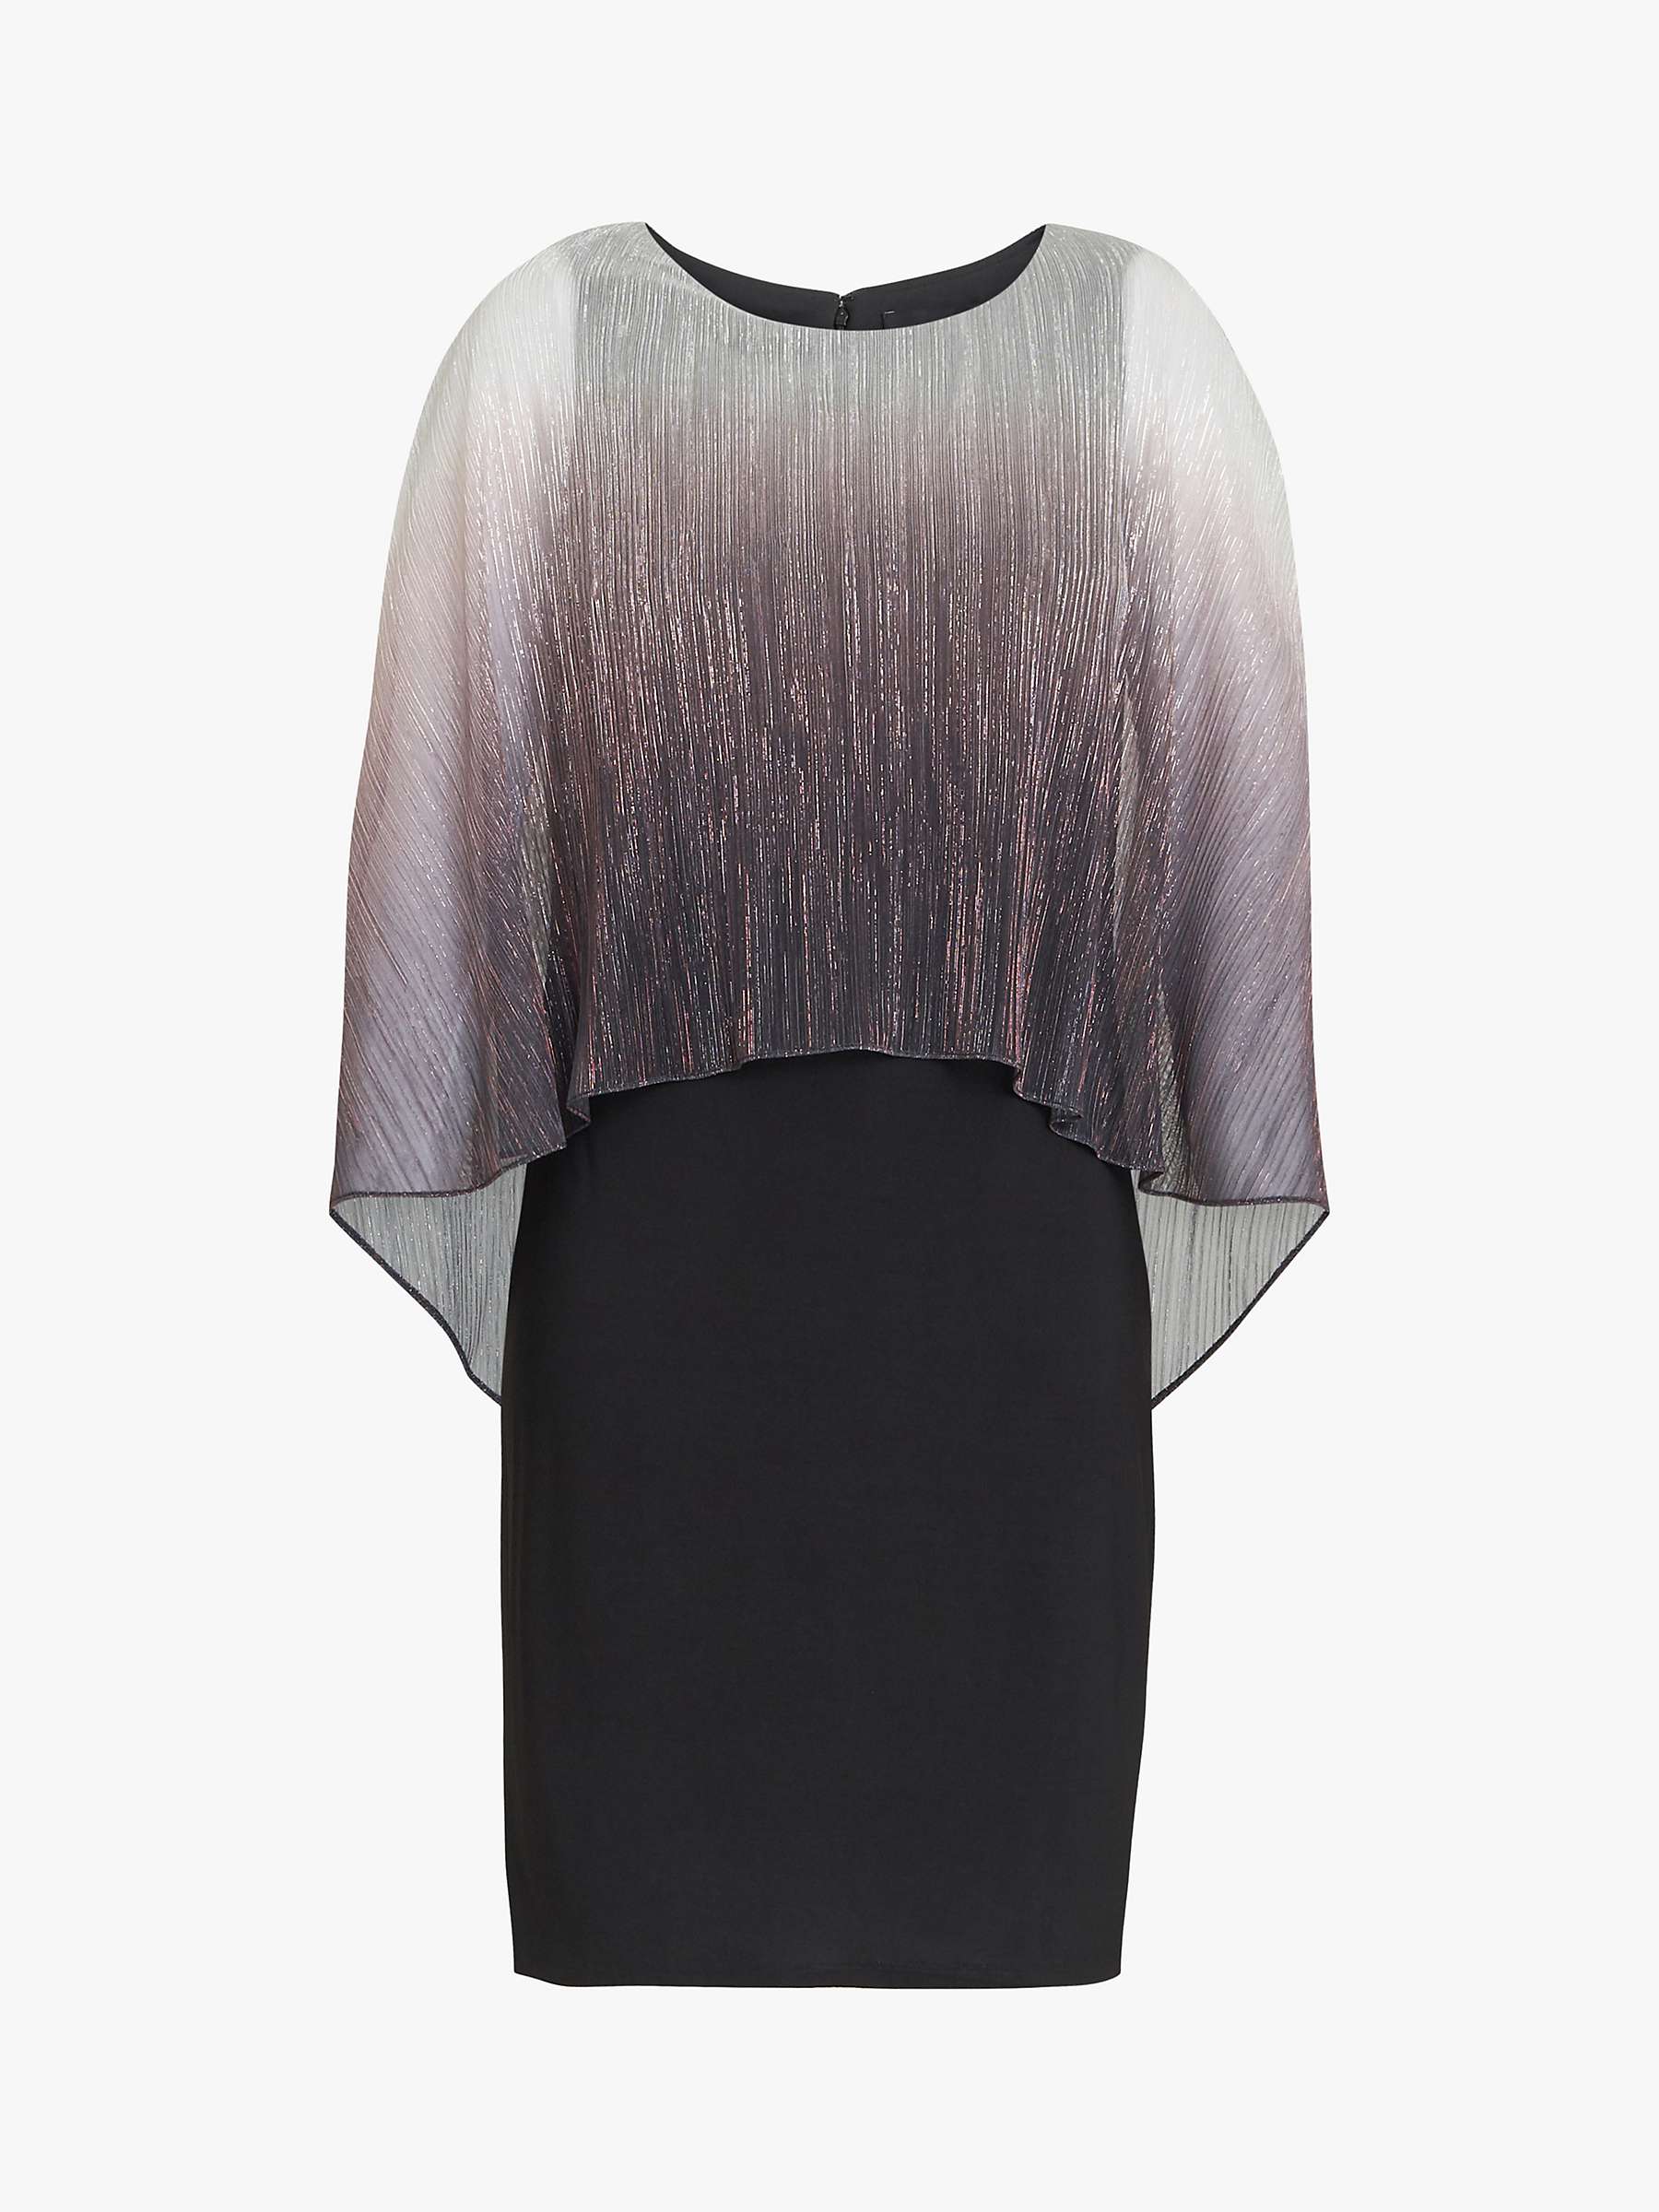 Buy Gina Bacconi Shyla Foil Dress, Black/Silver Online at johnlewis.com